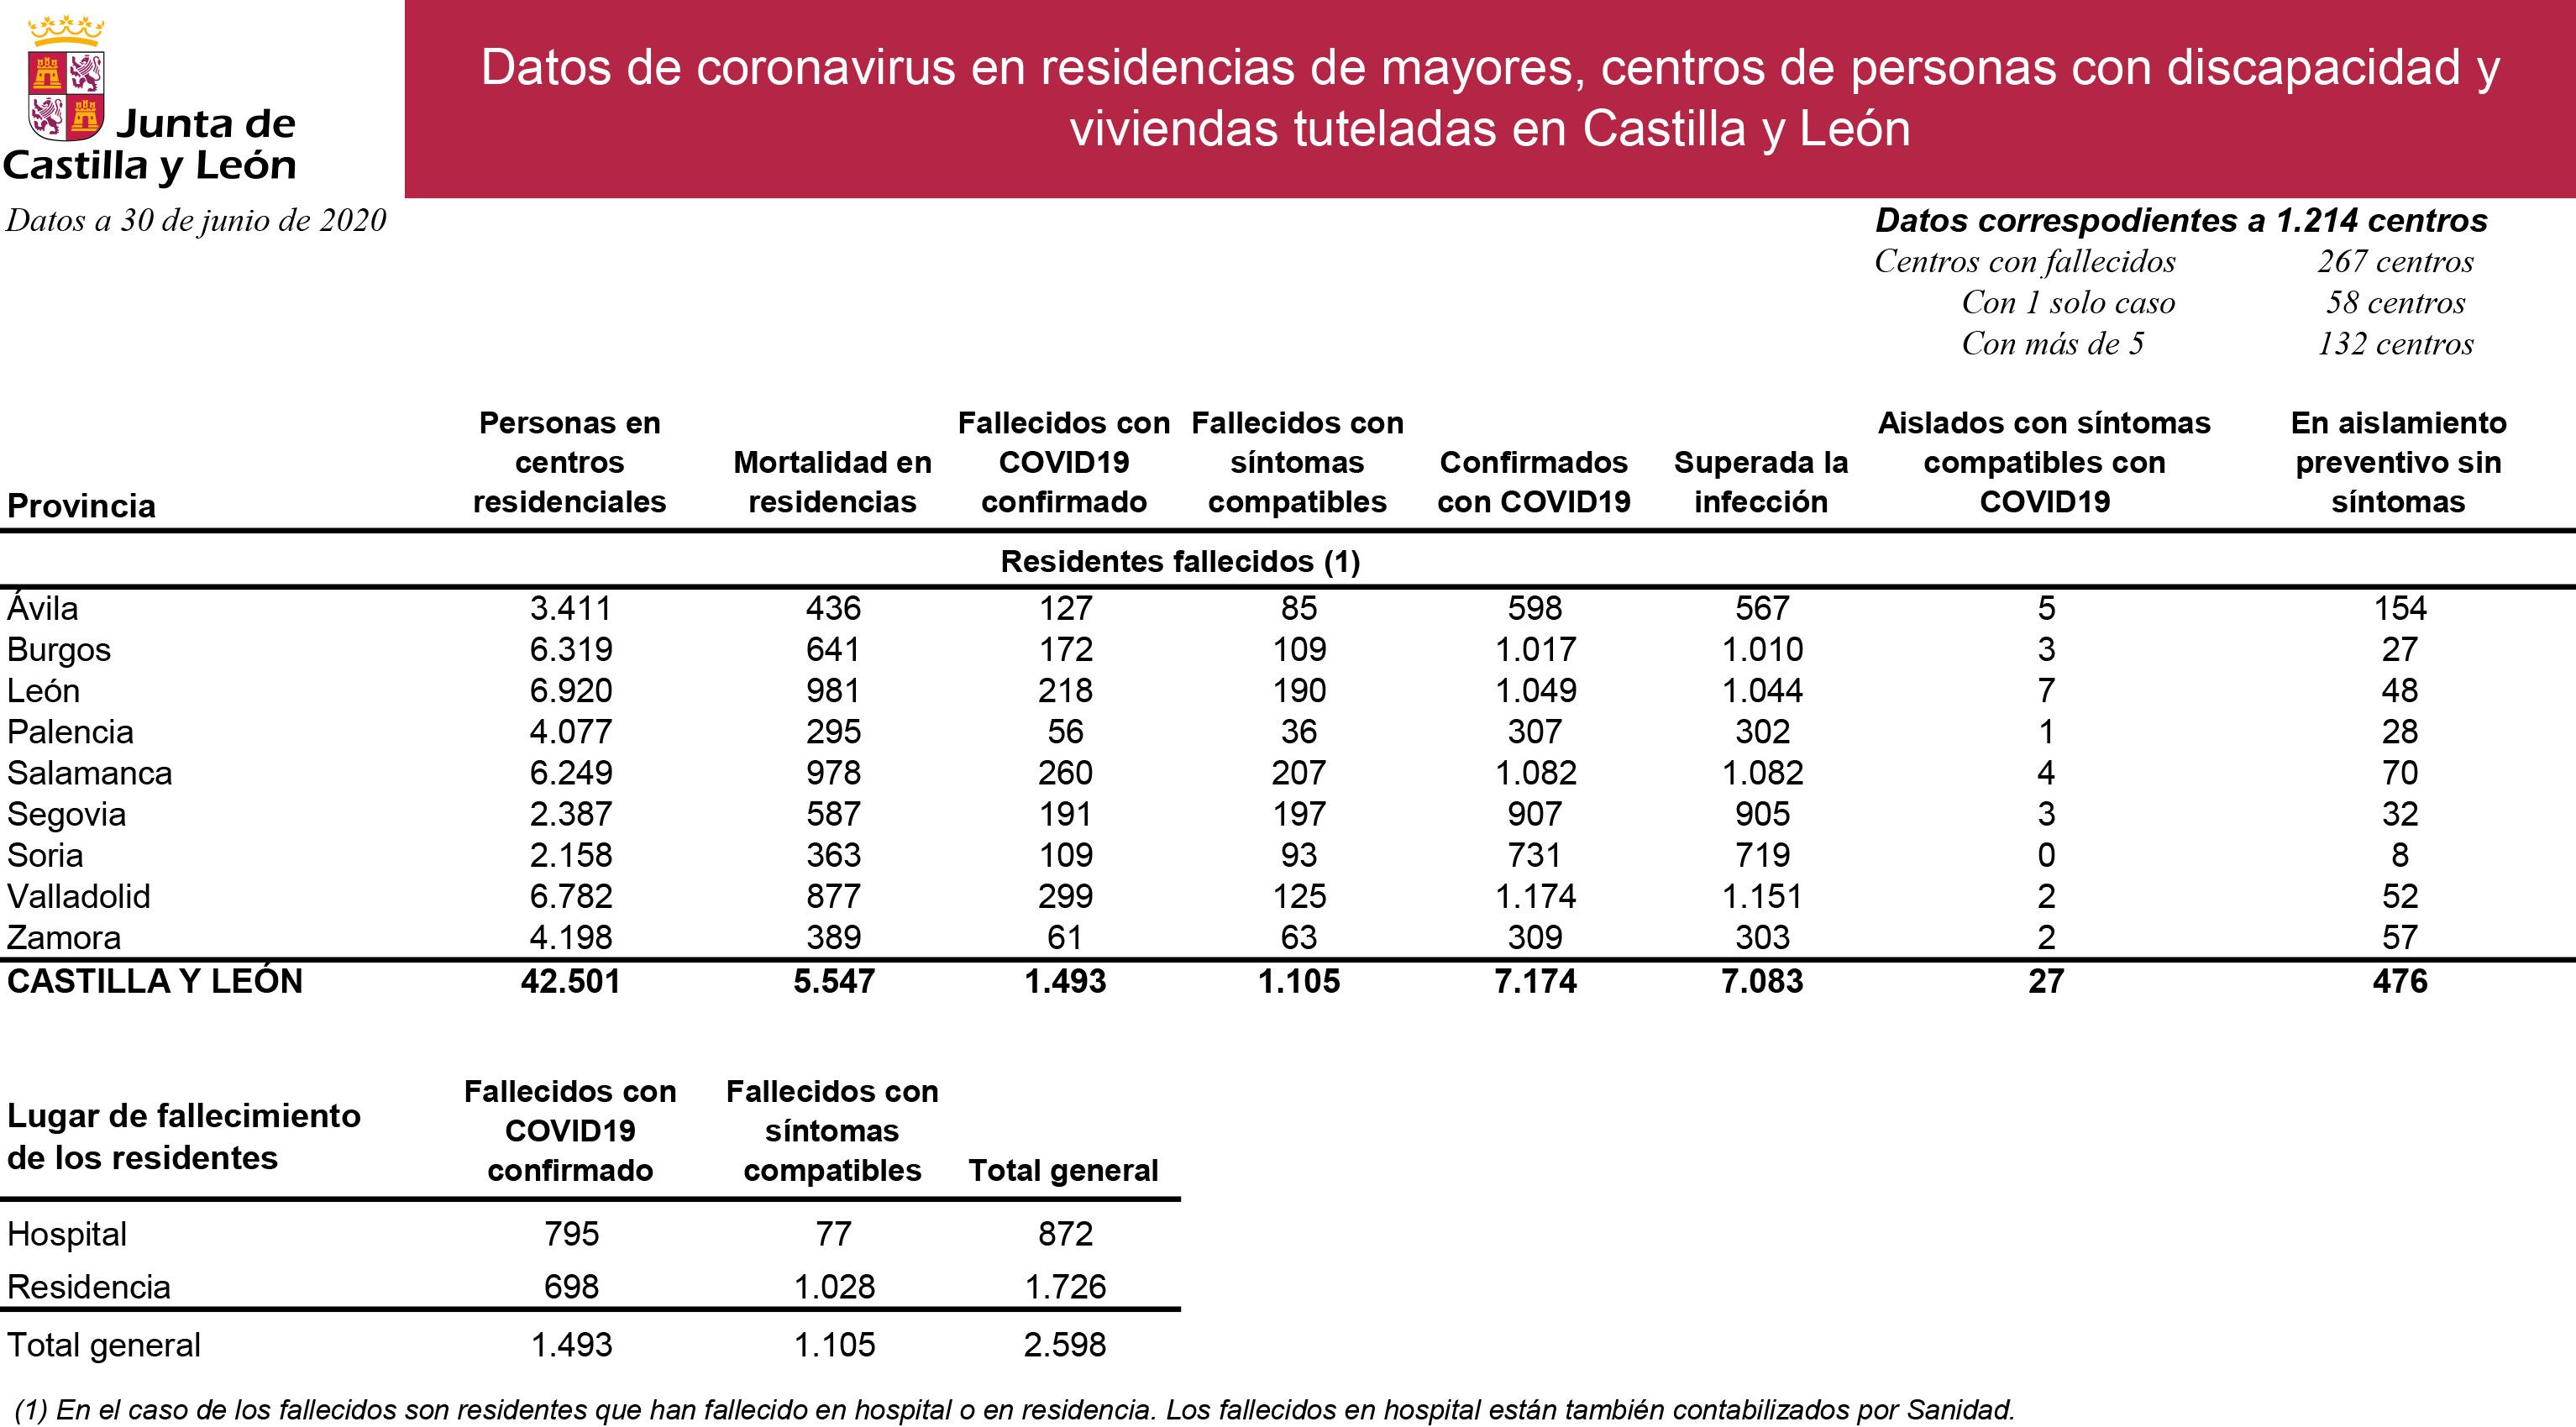 Datos de coronavirus residencias y centros 30 junio